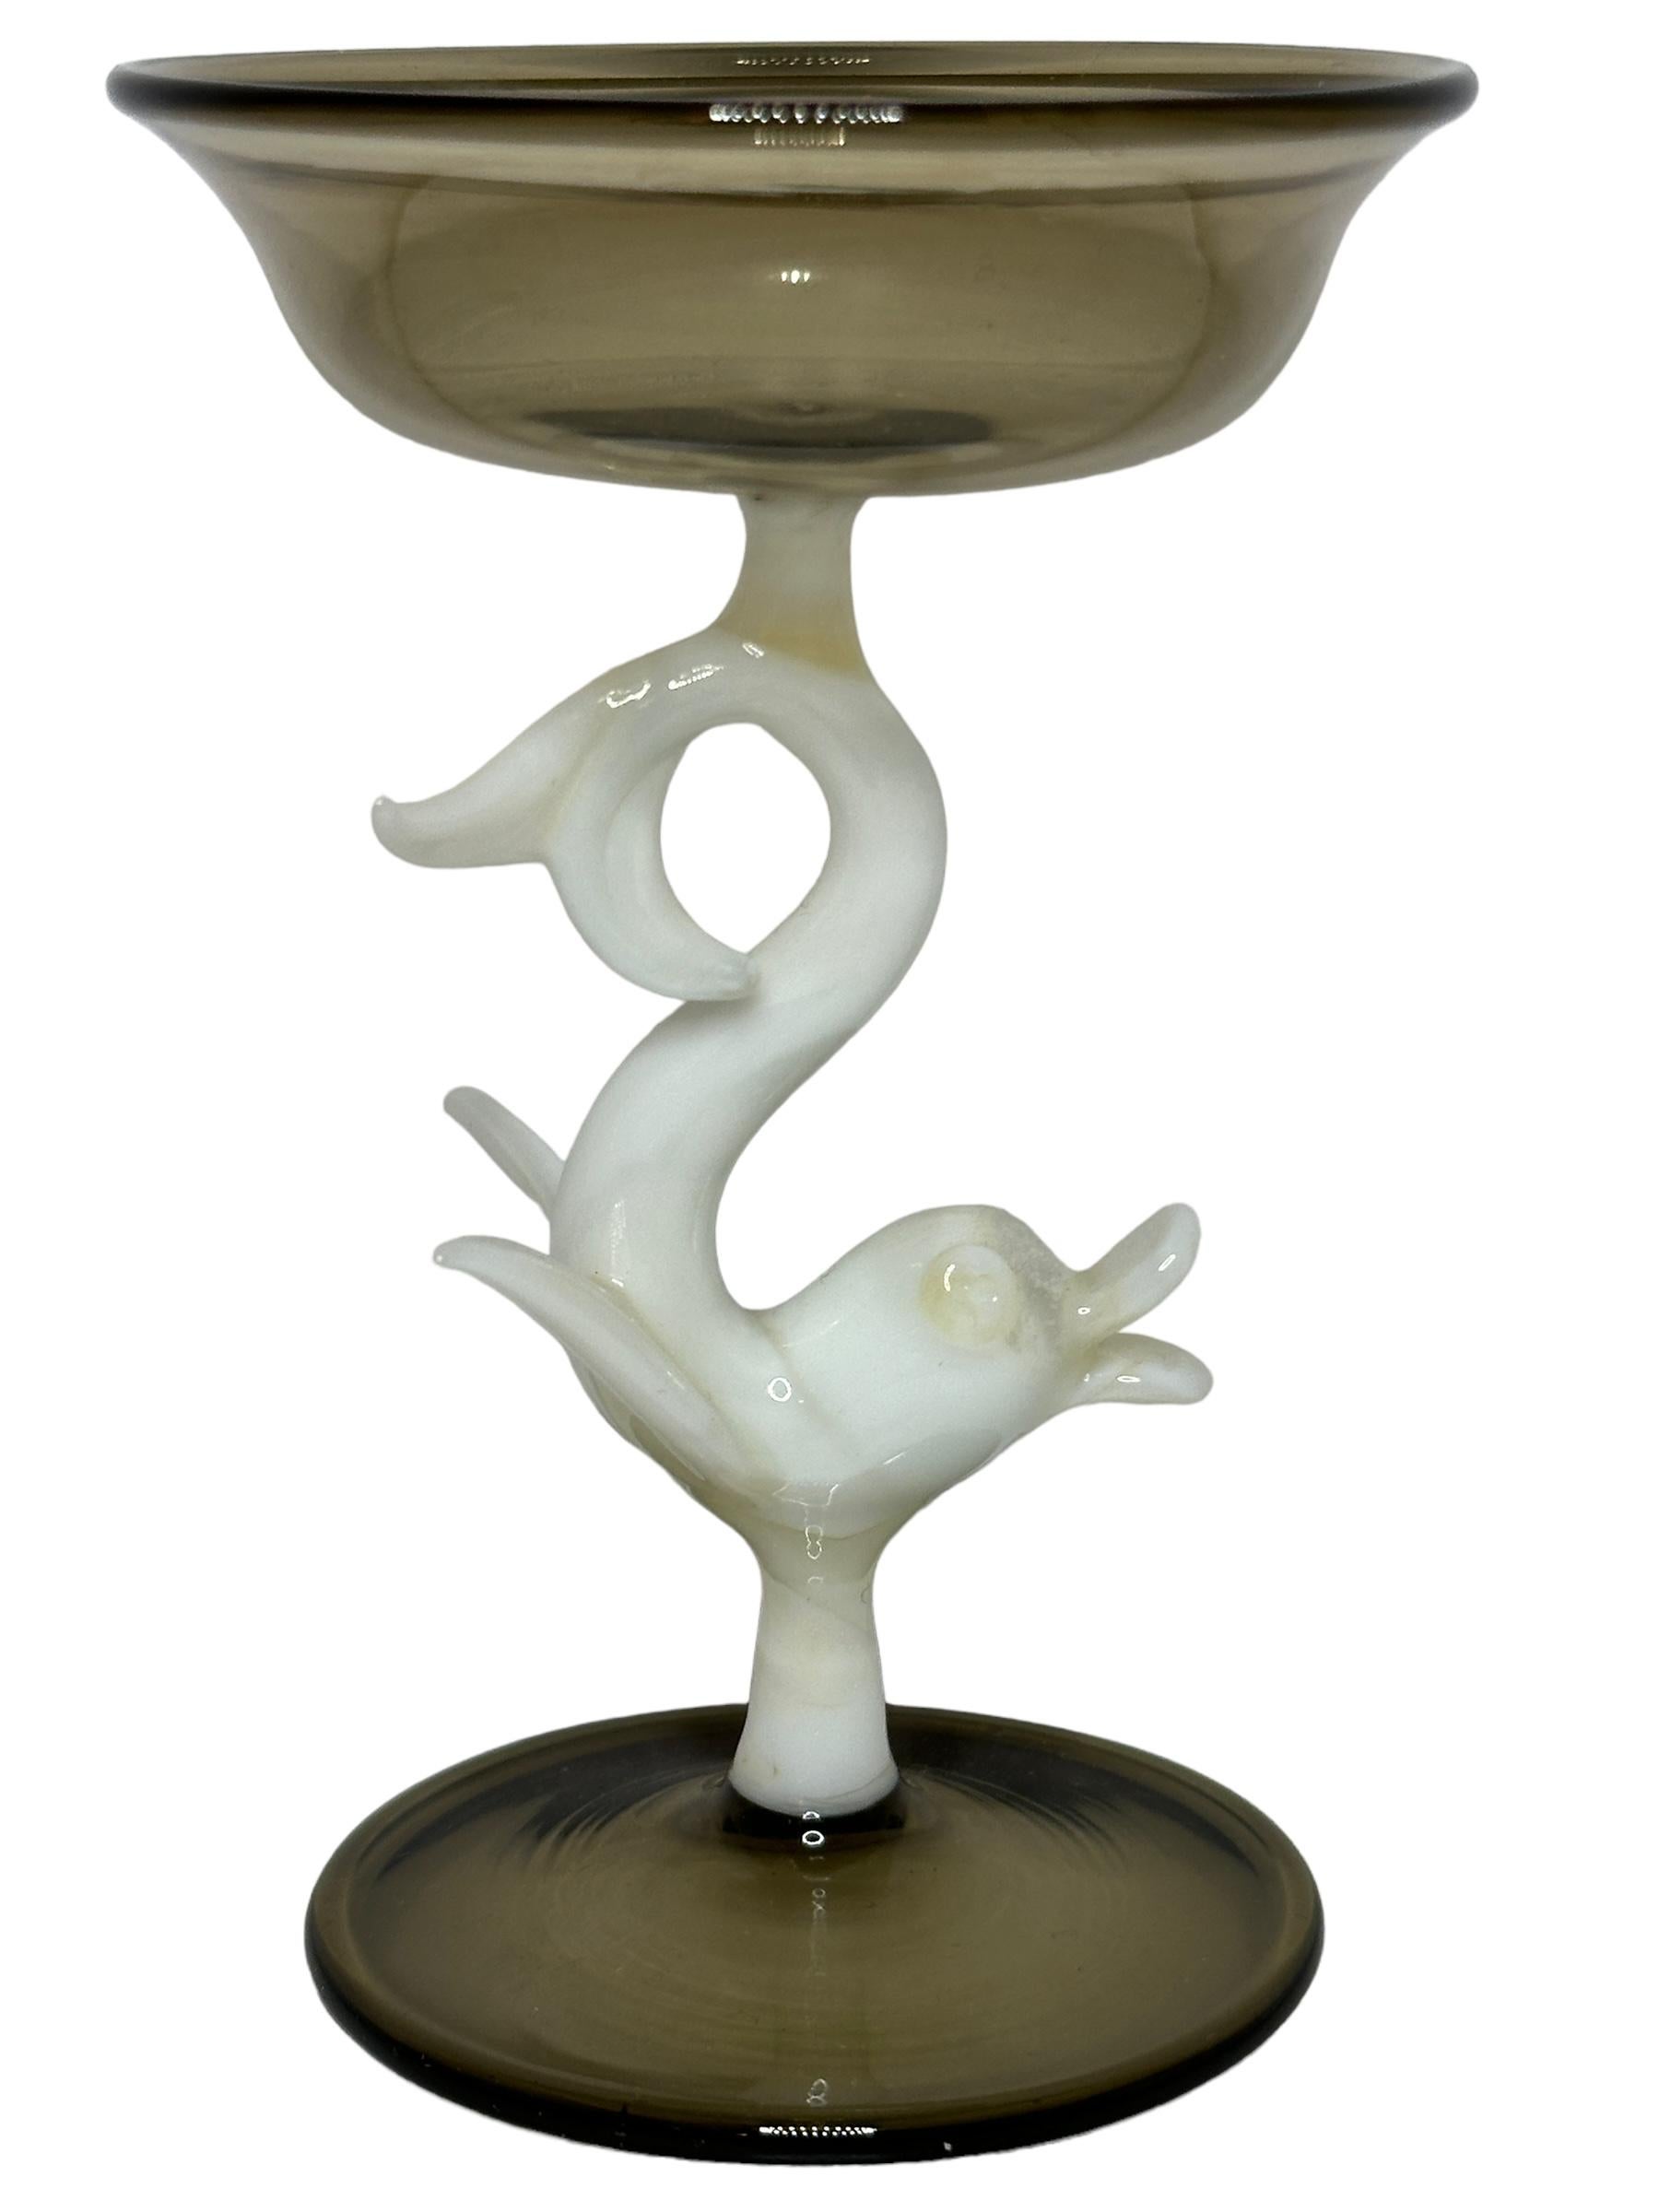 Dies ist ein wunderschönes Likörglas mit einem Stiel aus Österreich. Sie hat einen Delphinfisch-Schaft und ist im Bimini-Stil gehalten. Das Glas hat ein wunderschönes Design, der Stiel stellt einen Delphinfisch in weißer Farbe dar. Der Sockel und